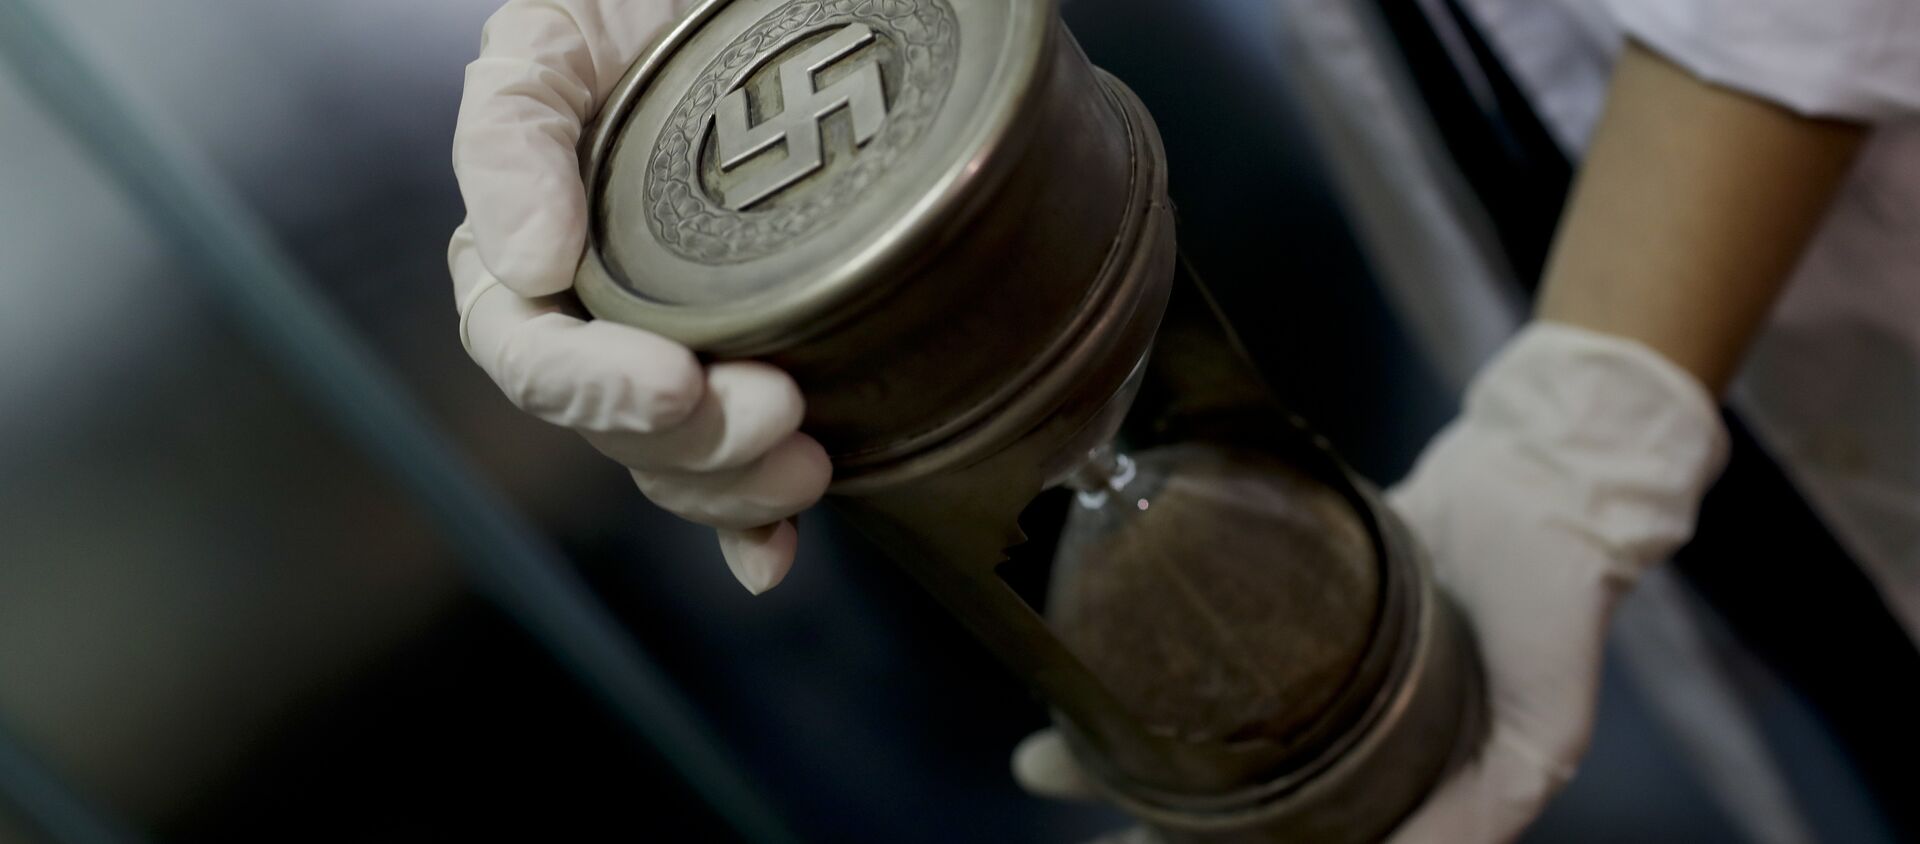 Artefactos con simbología nazi encontrados en Argentina en junio de 2017 - Sputnik Mundo, 1920, 07.05.2019